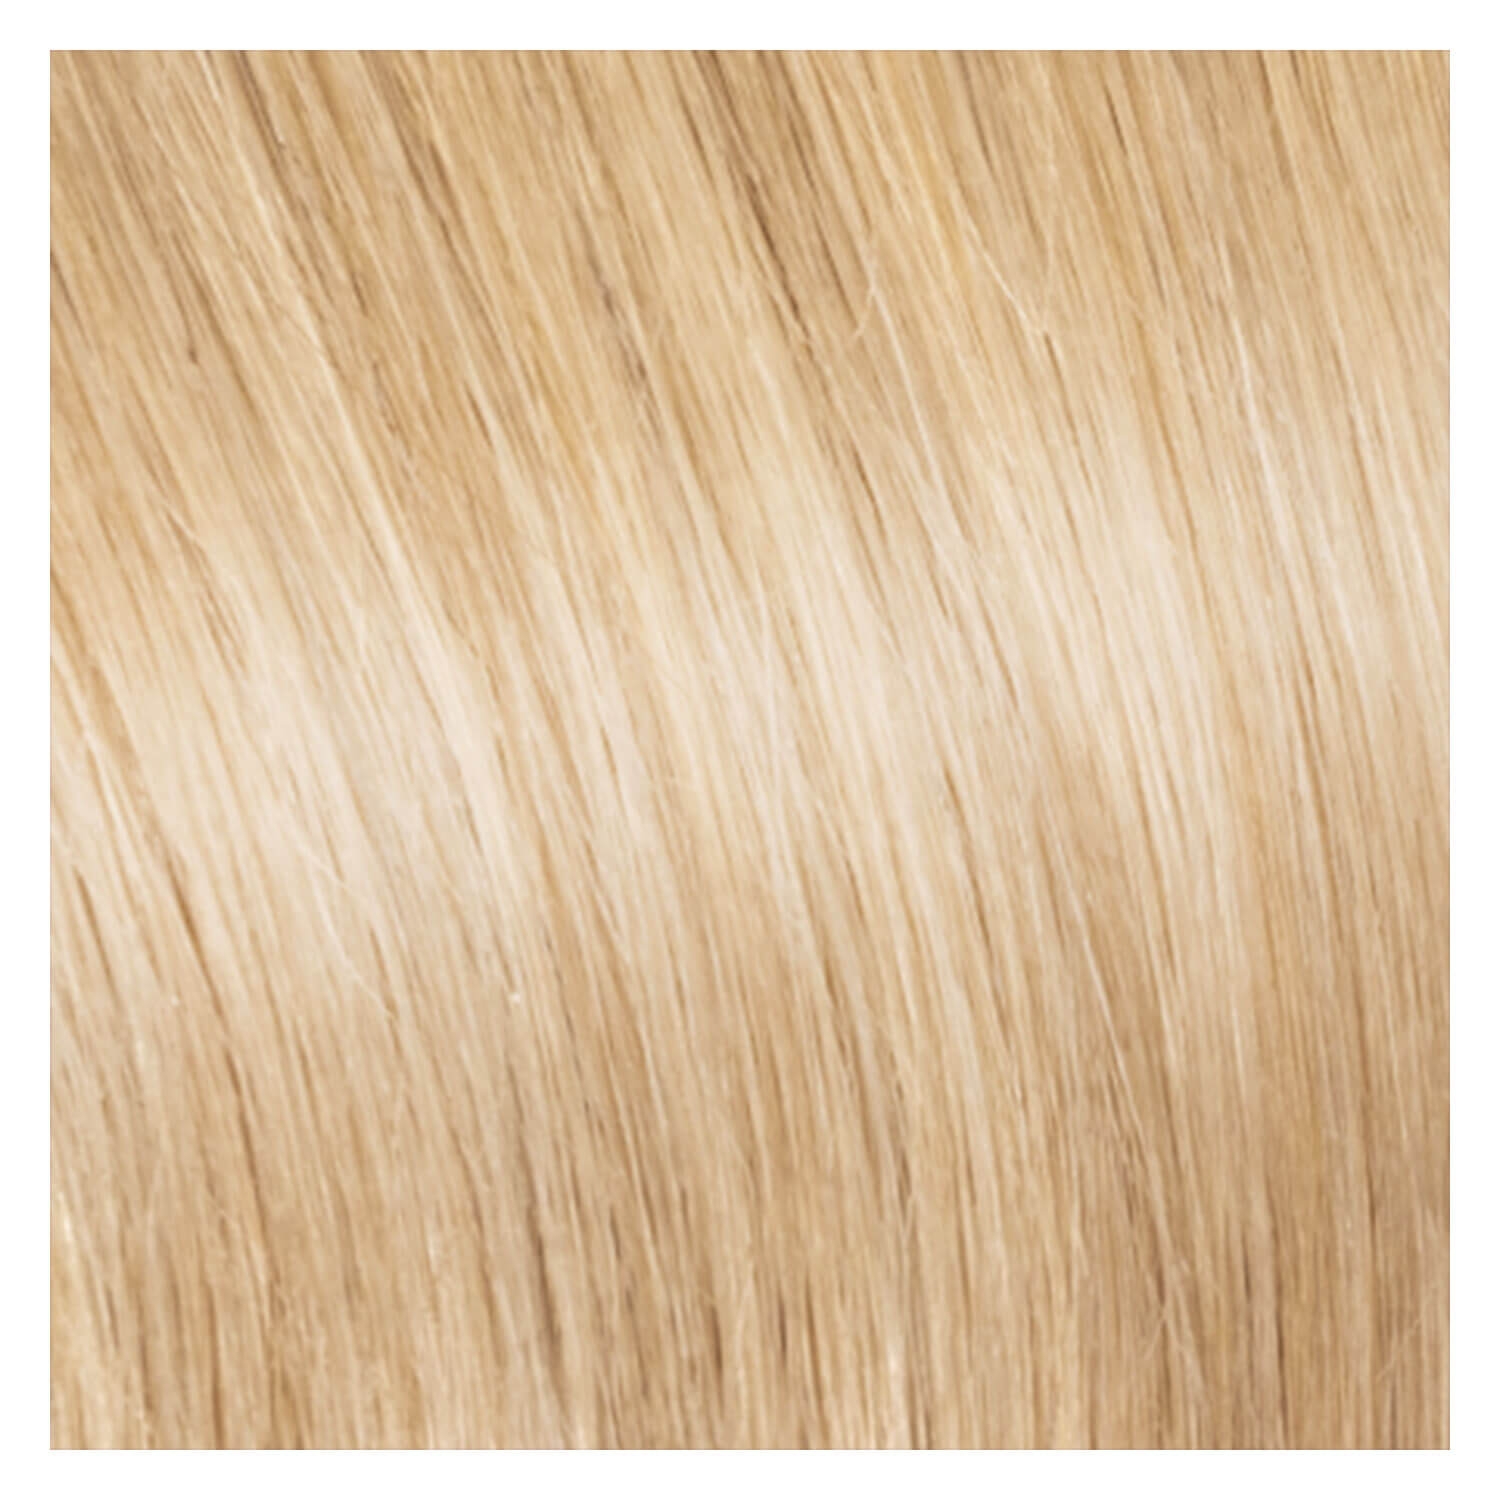 Produktbild von SHE Weft In-System Hair Extensions - DB2 Hellblond 50/60cm